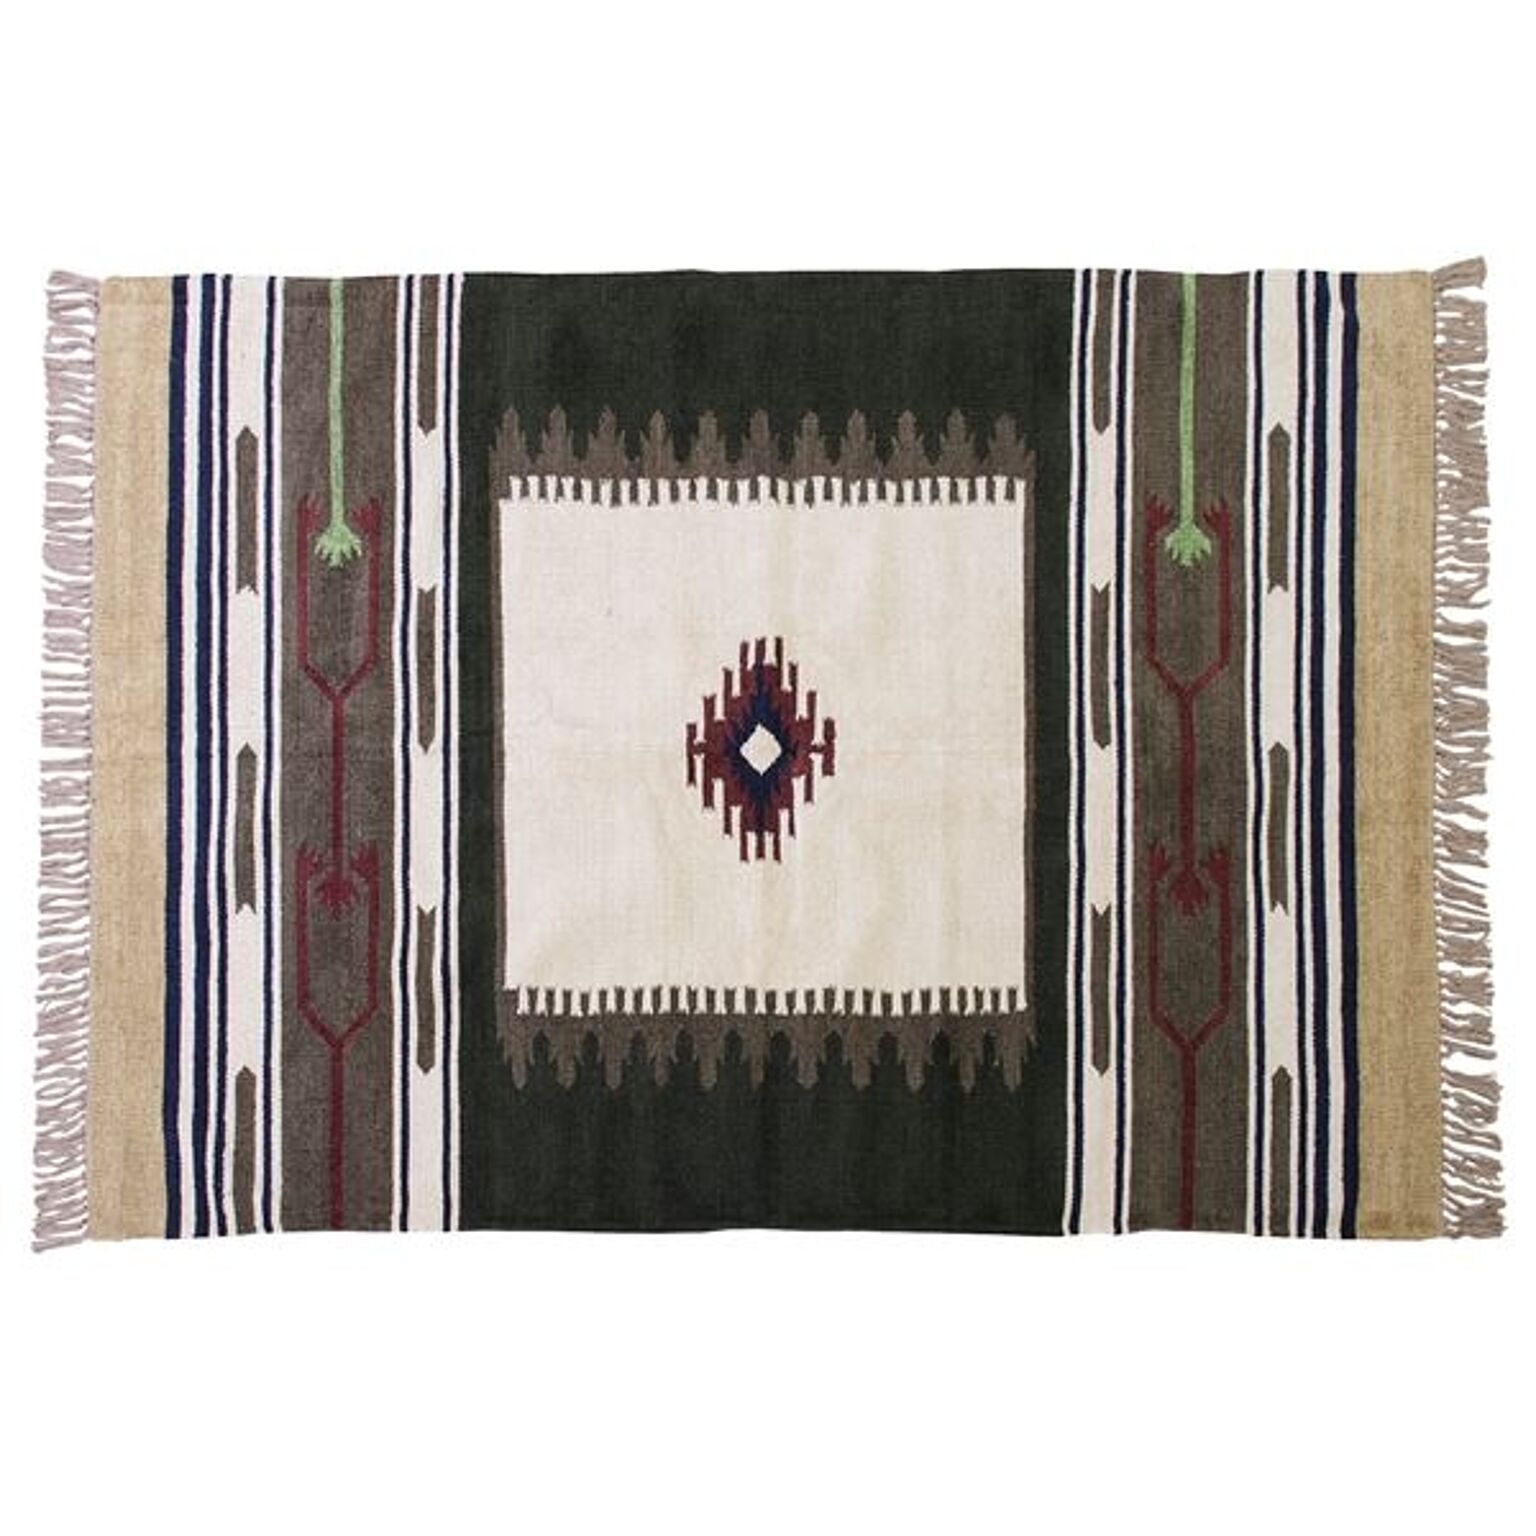 ラグマット 絨毯 190×130cm TTR-106A 長方形 インド製 綿 コットン キリム リビング ダイニング ベッドルーム 寝室 居間